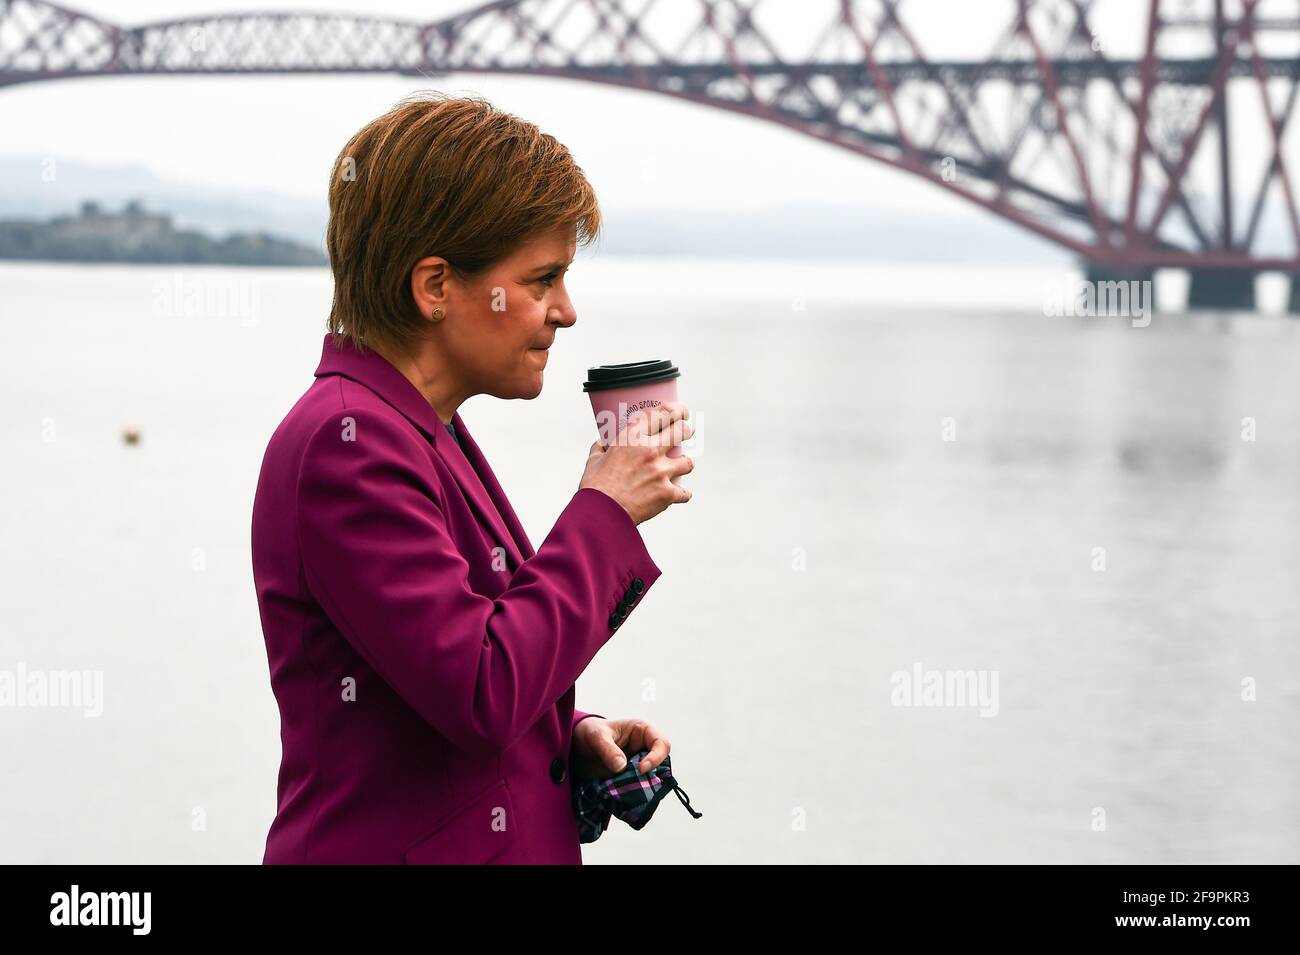 Schottlands erste Ministerin Nicola Sturgeon, Vorsitzende der Scottish National Party (SNP), neben dem Firth of Forth und der Forth Bridge, während sie in South Queensferry für die schottischen Parlamentswahlen kämpft. Bilddatum: Dienstag, 20. April 2021. Stockfoto